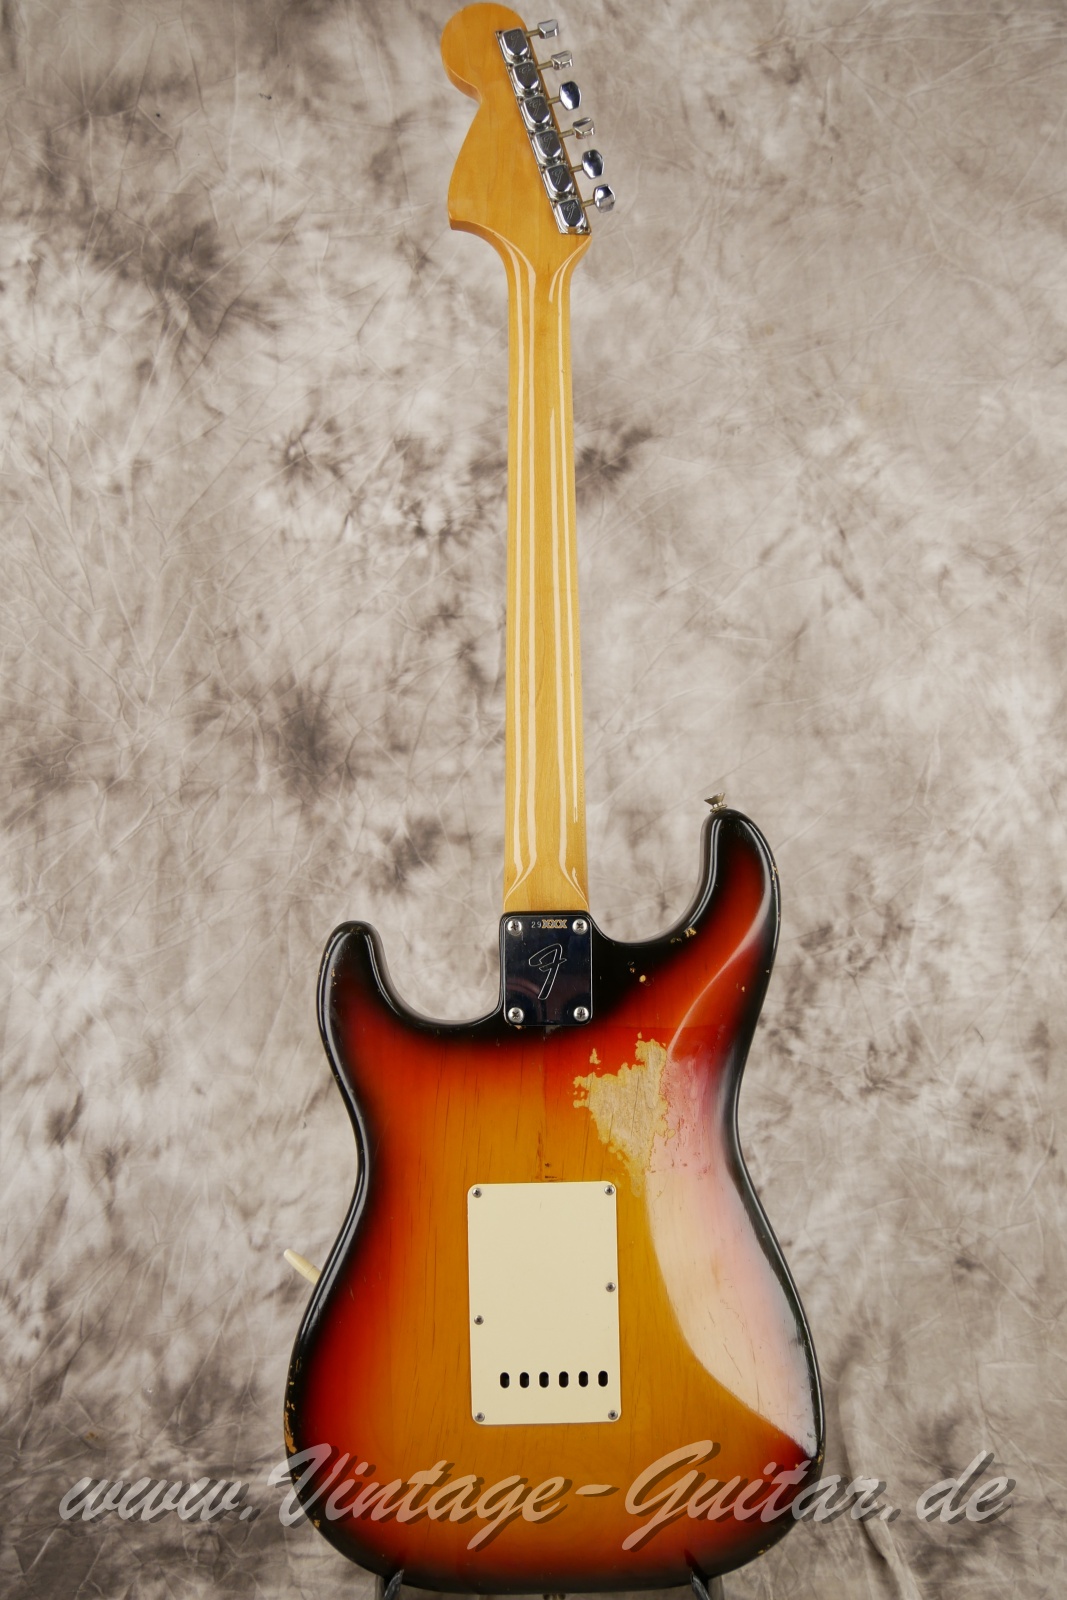 Fender_Stratocaster_sunburst_4hole_1971-002.JPG